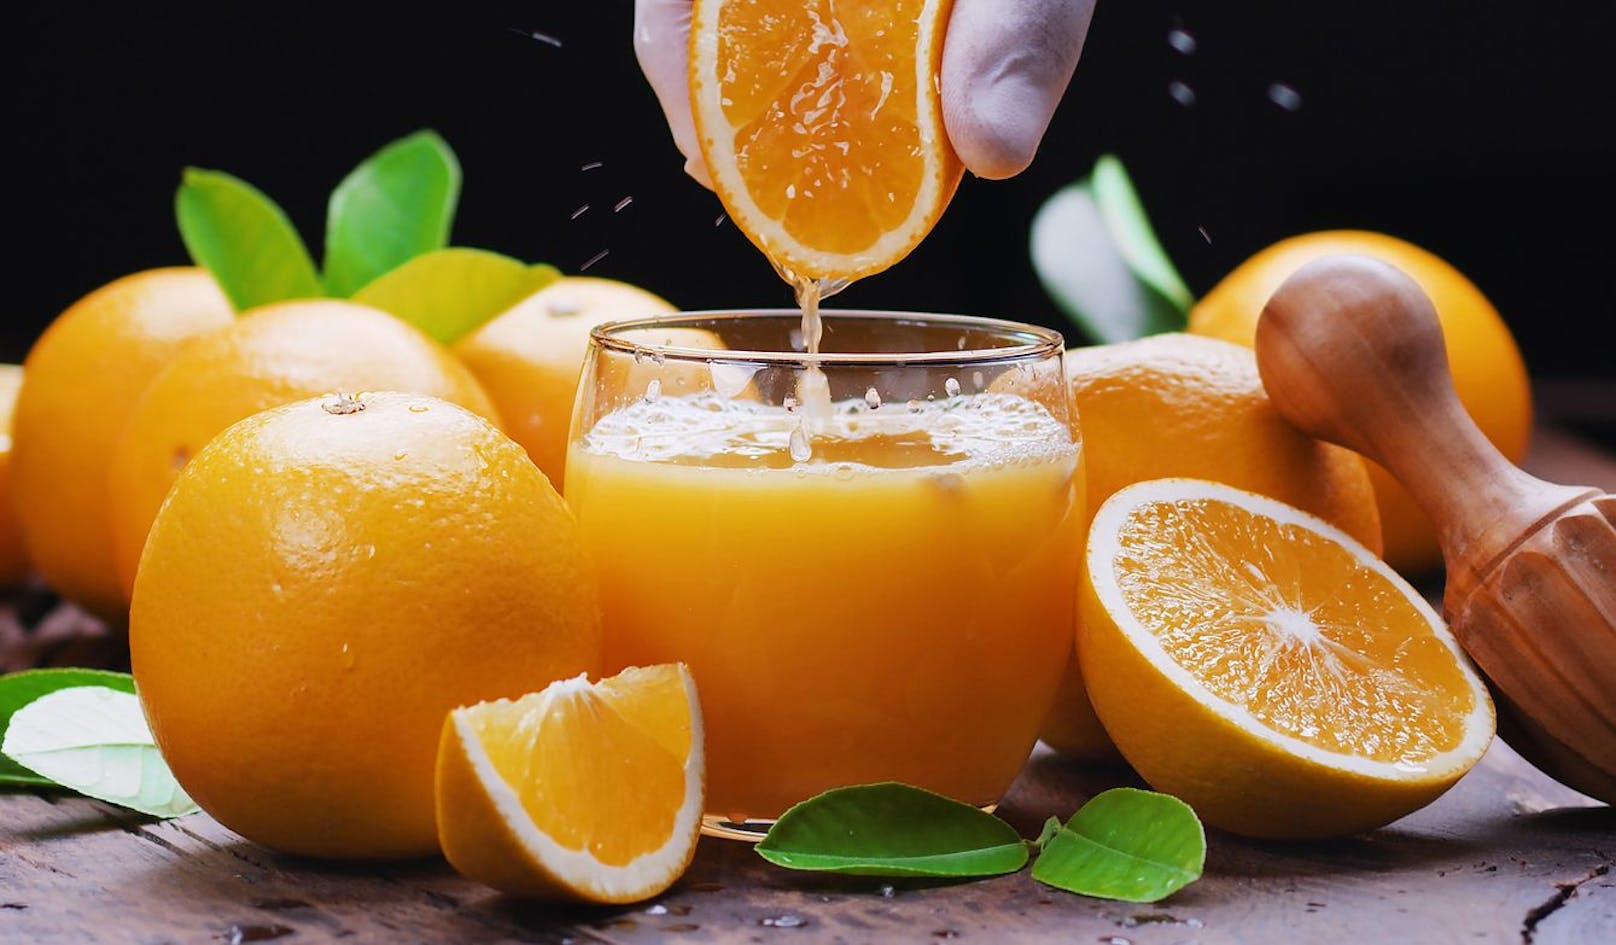 Orangensaft ist der beliebteste Fruchtsaft der Österreicher.